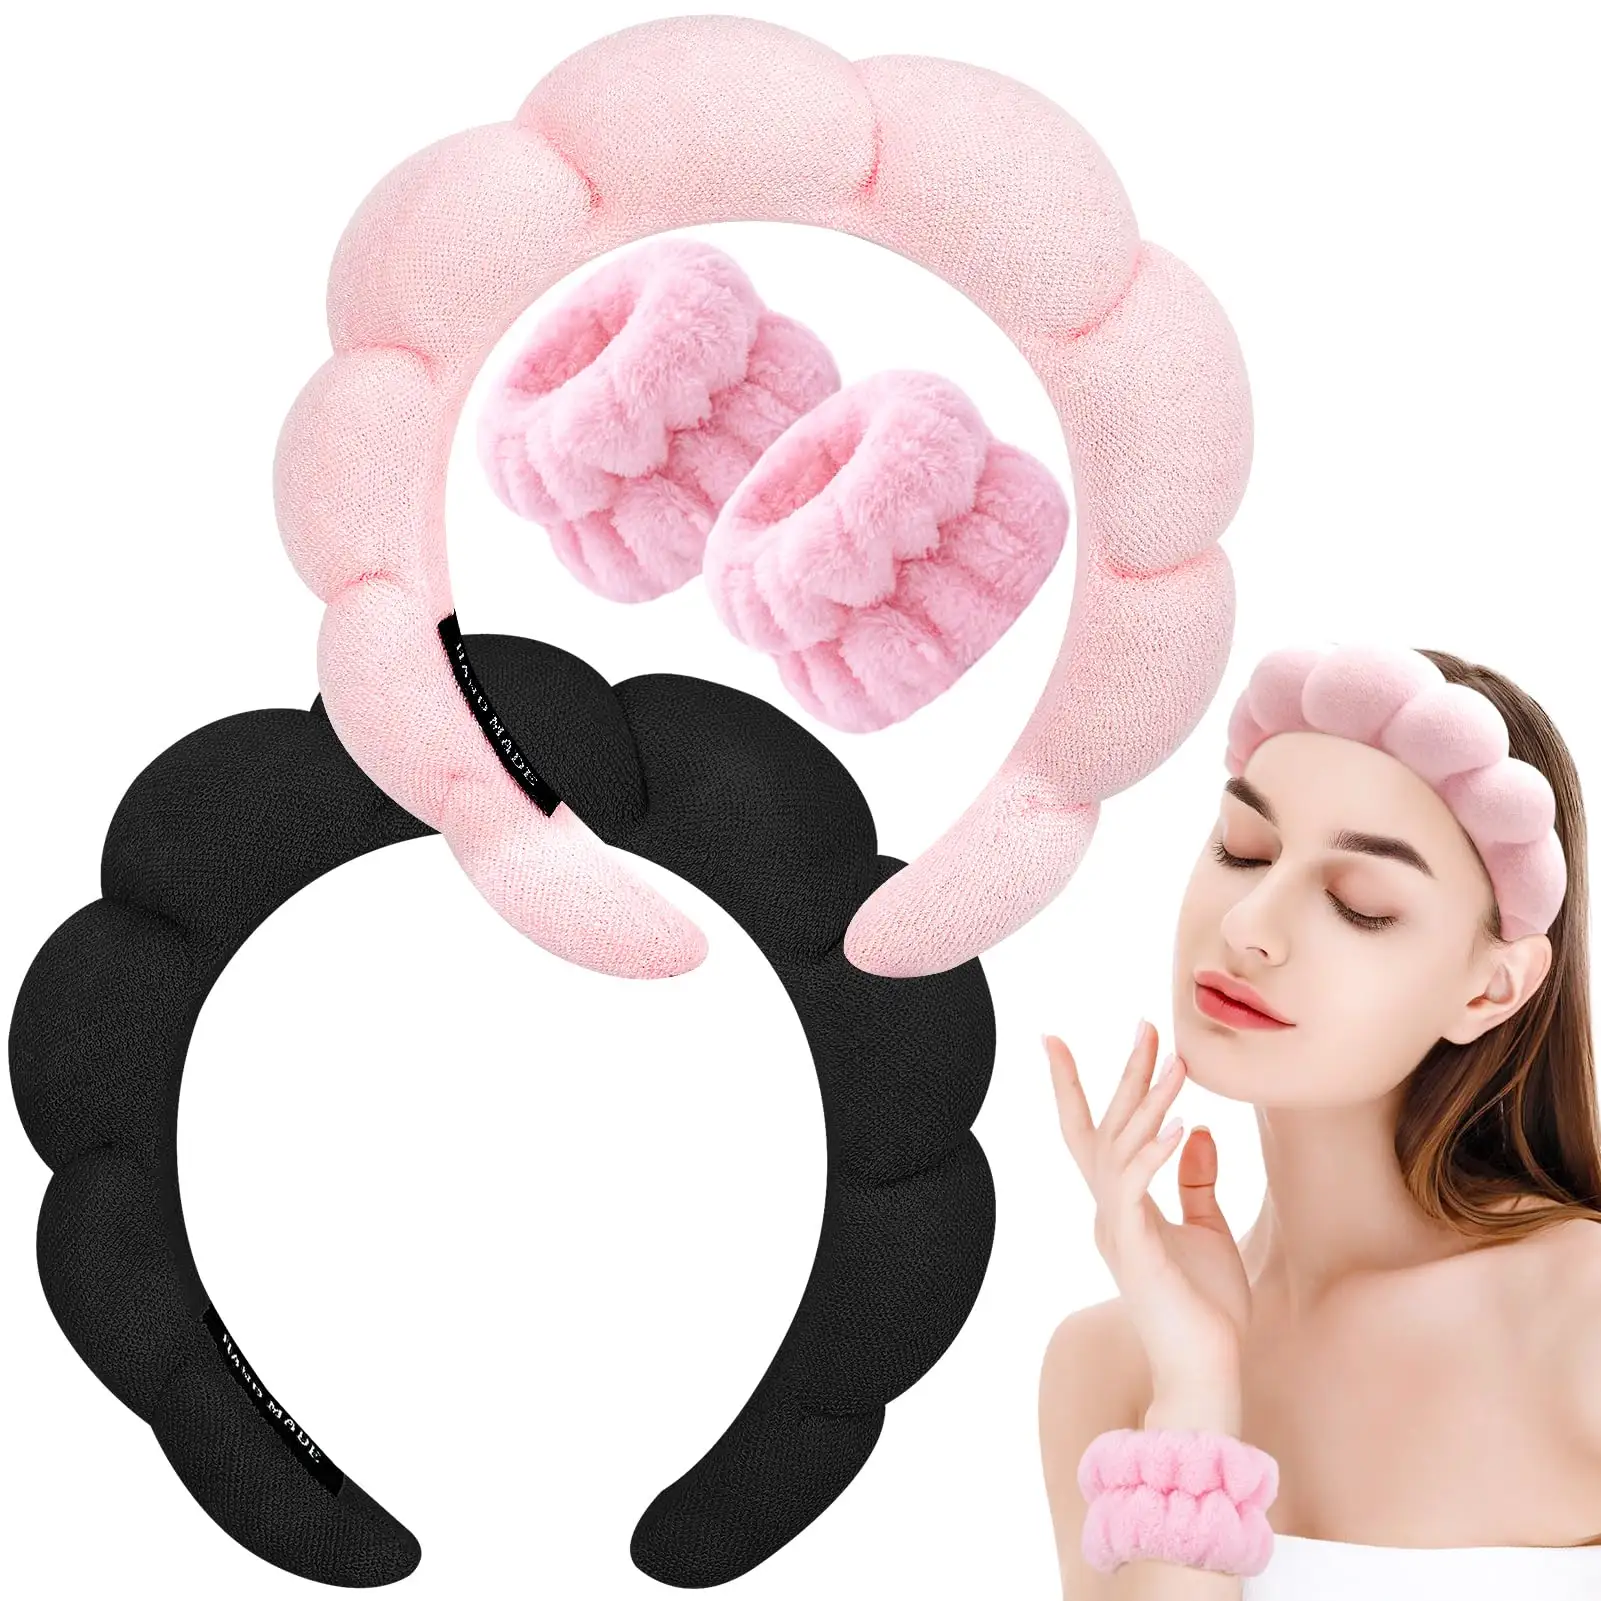 Spa Stirnband zum Waschen Gesicht Armband Set Schwamm Make-up Hautpflege Stirnband Handgelenk Handtücher Haarband für Frauen Mädchen